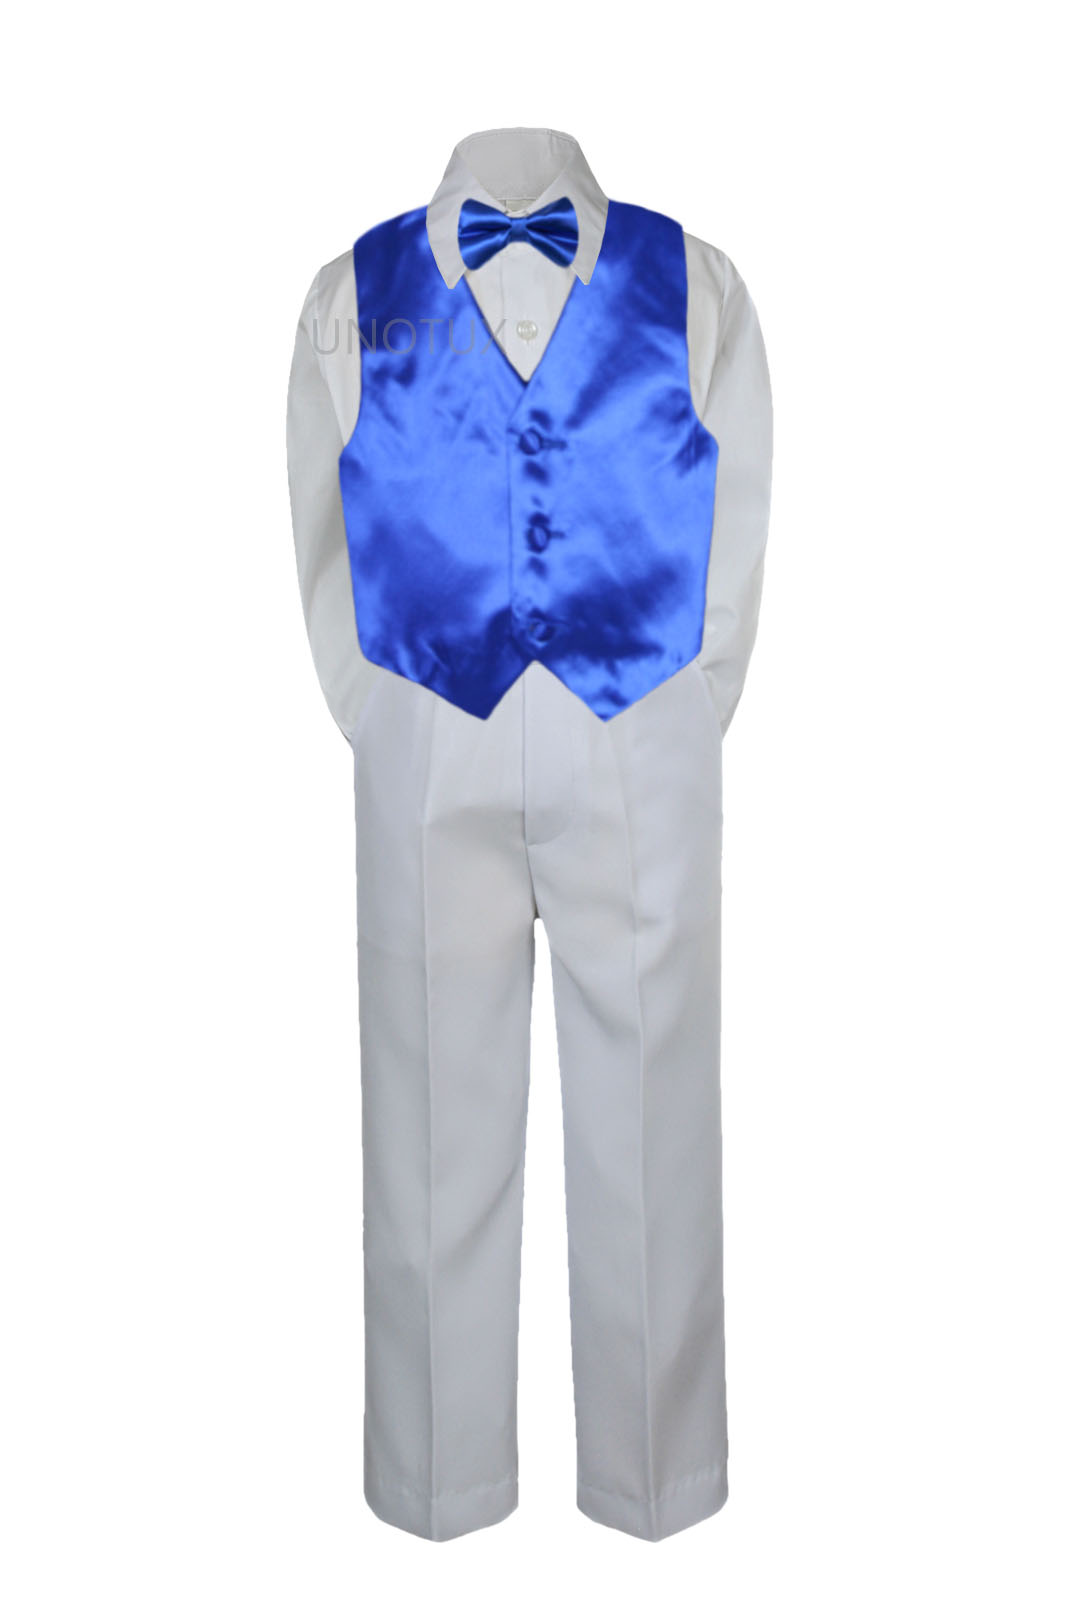 Leadertux 4pc S M L XL 2T 3T 4T Baby Toddler Boys Shirt White Pants Suits Tuxedo Formal Wedding Party Bow Tie Vest Set